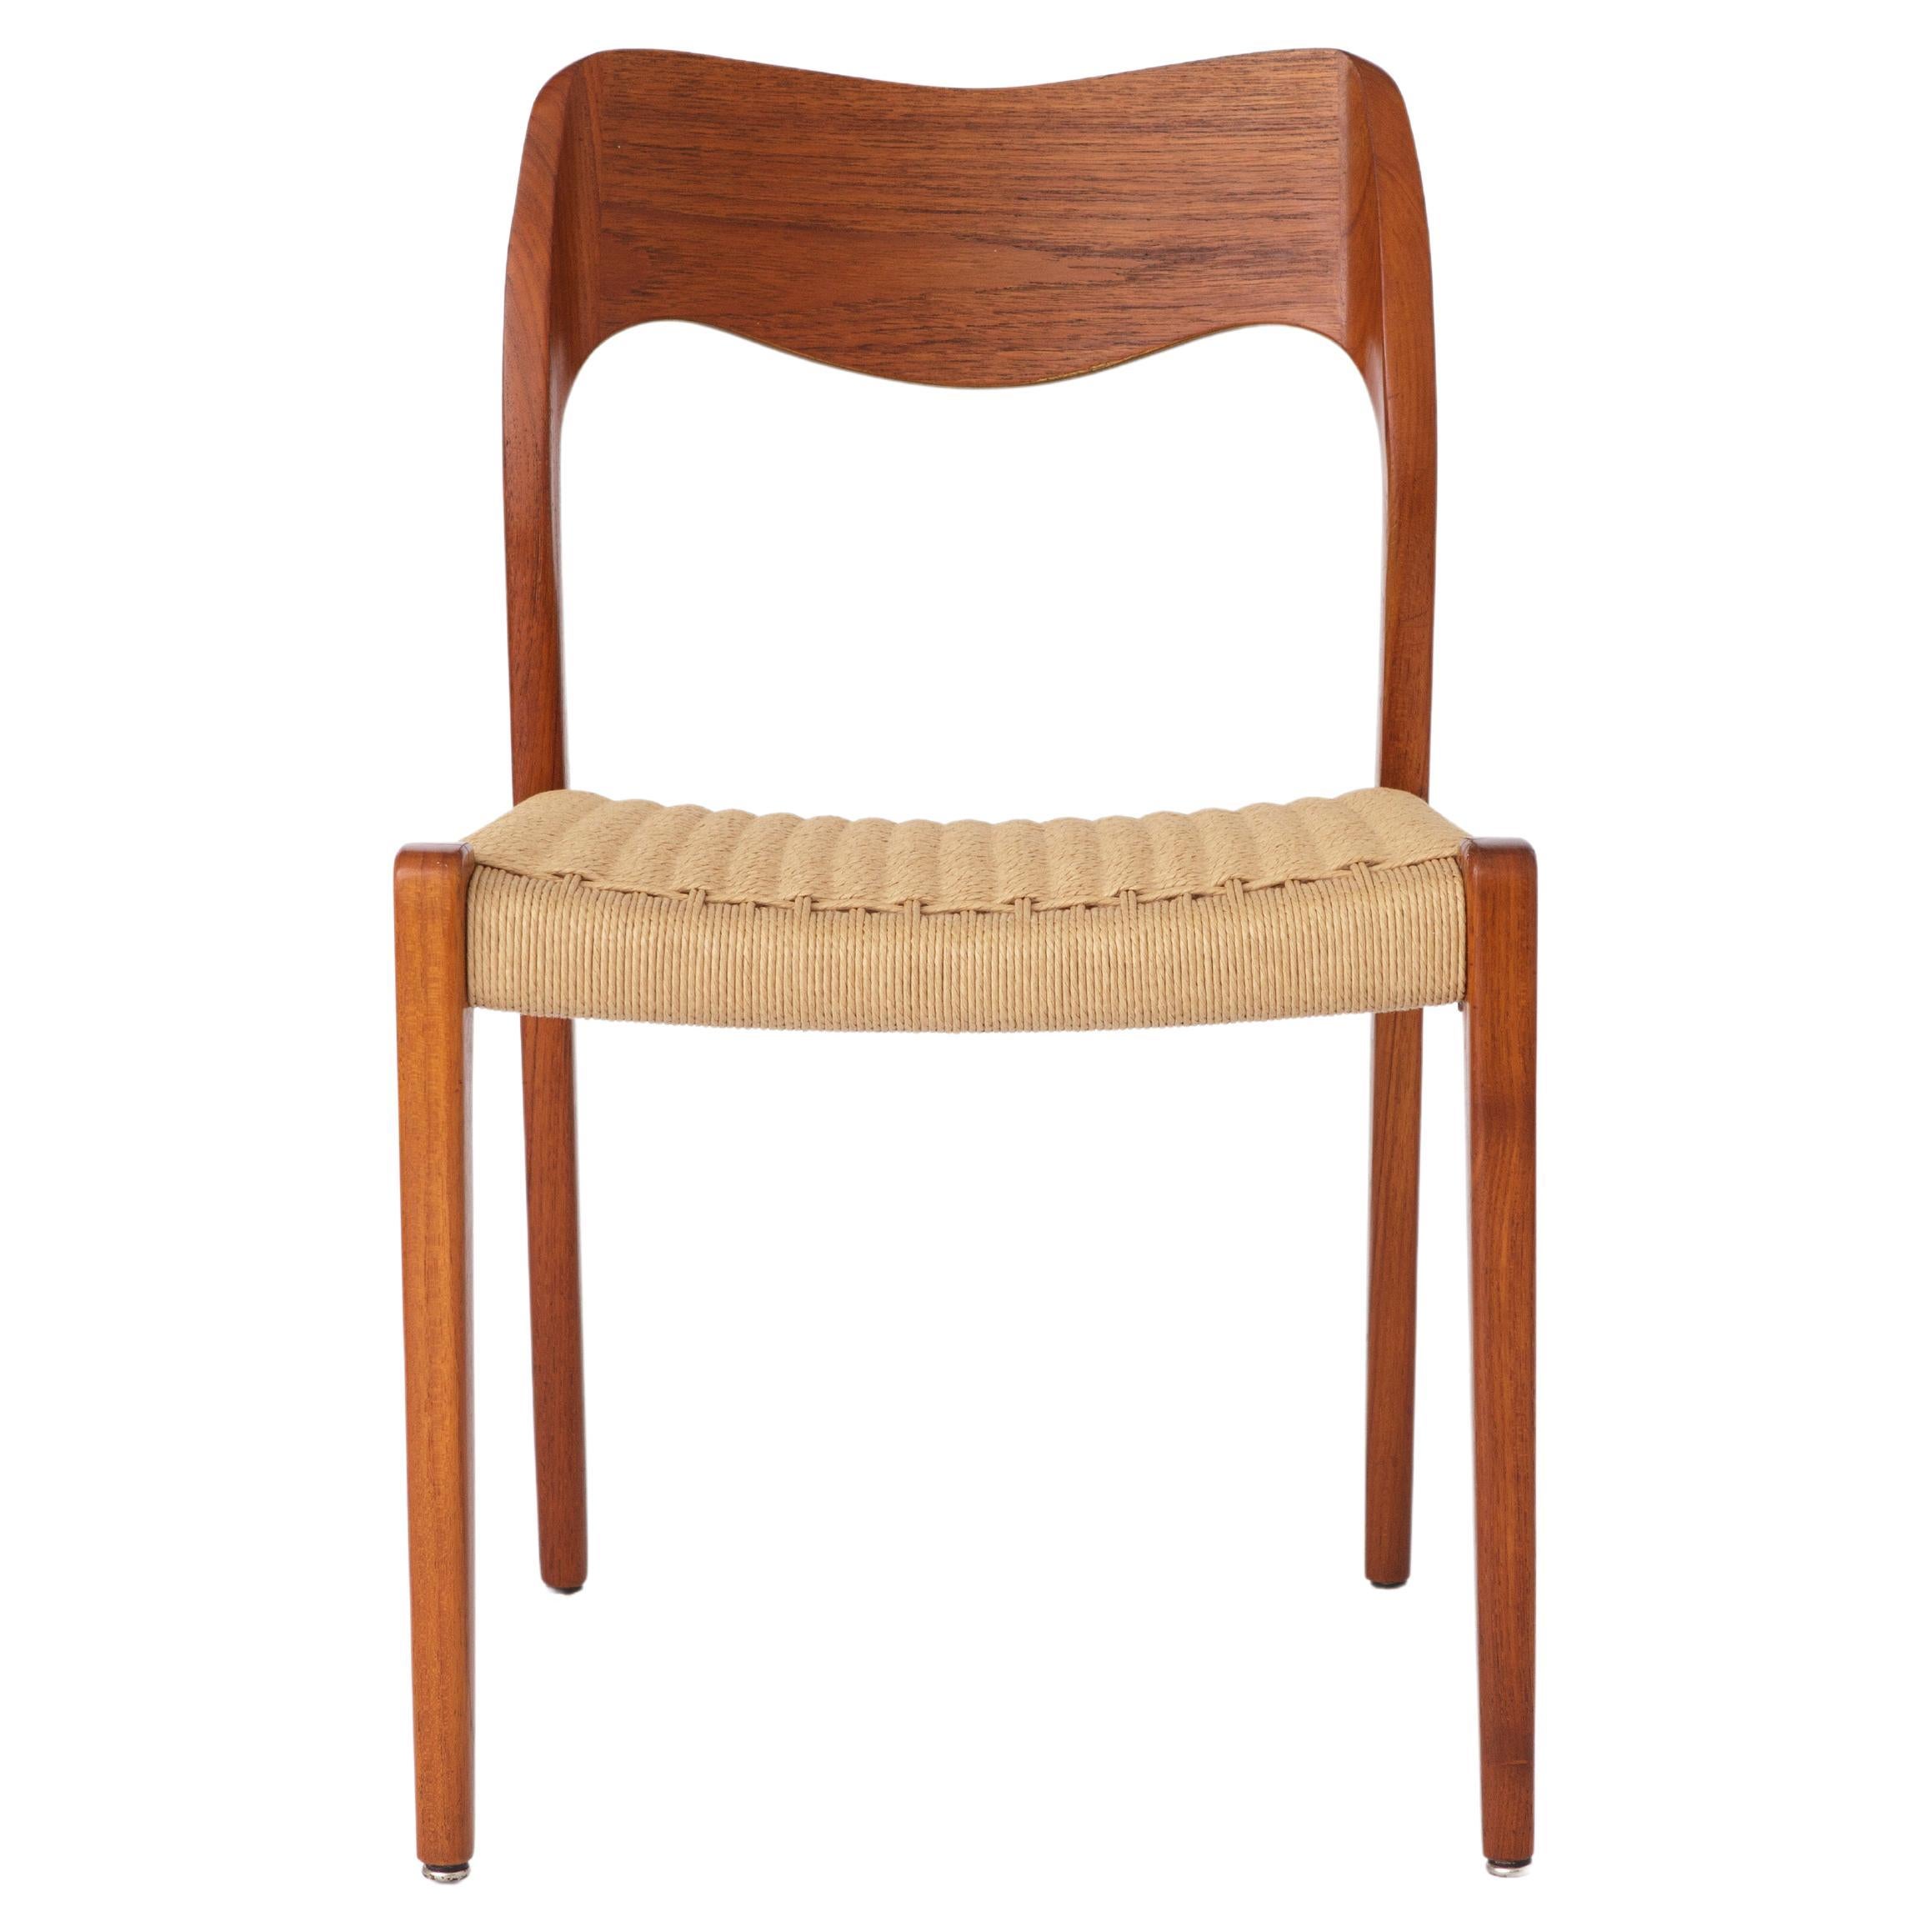 Repaired - 1 of 2 Niels Moller Chairs, model 71, Teak, 1950s, Vintage